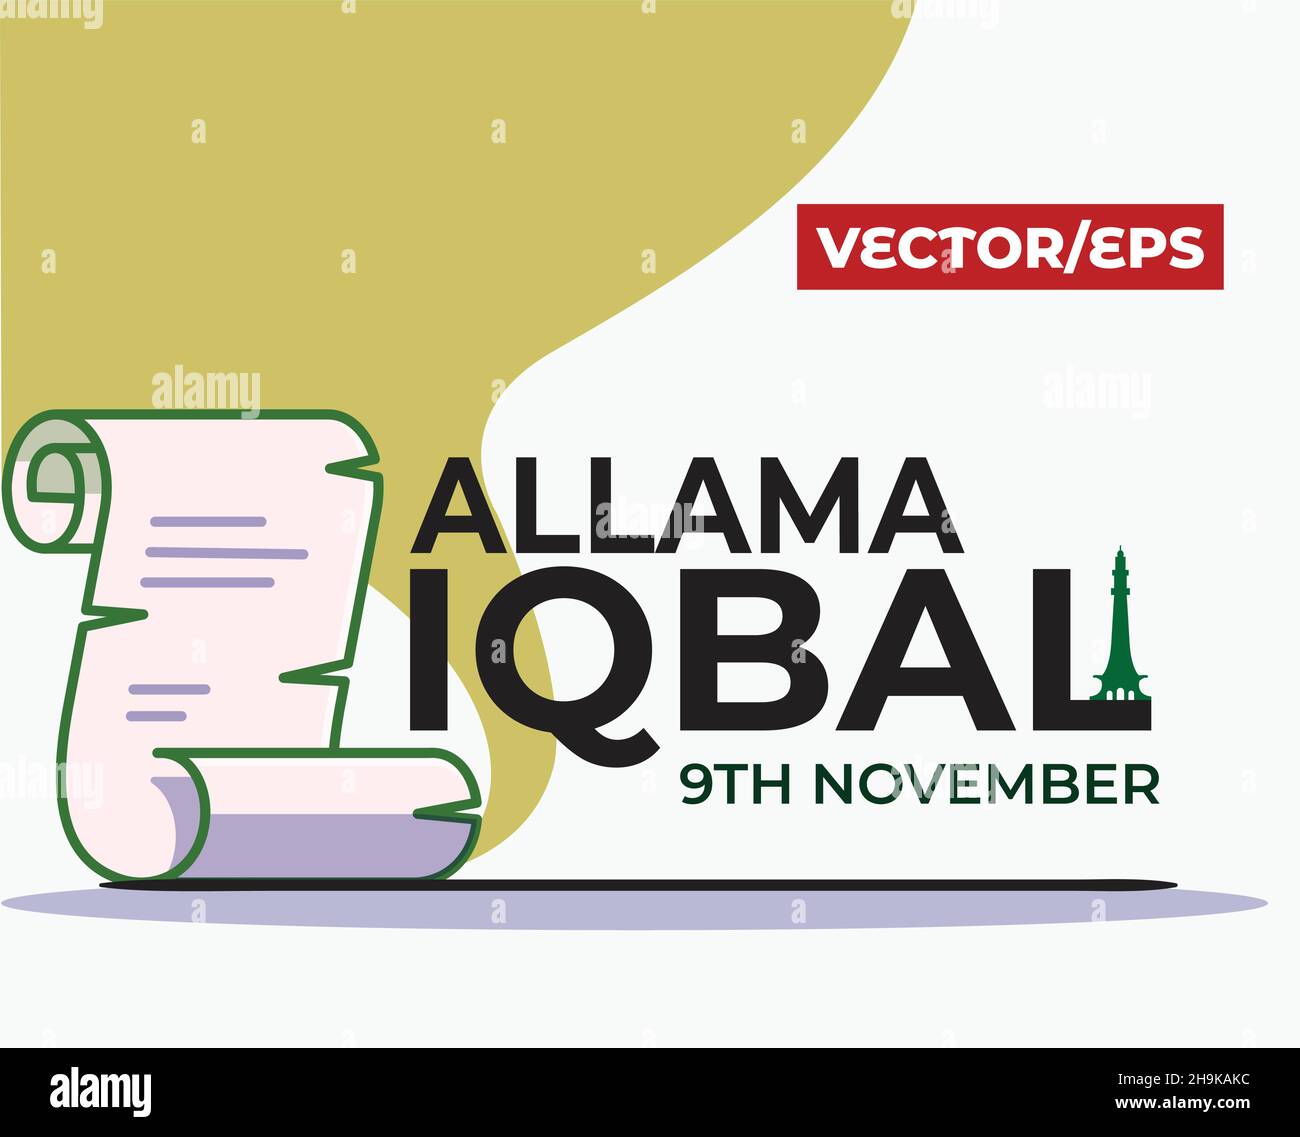 9 novembre célébration de la Journée de l'Iqbal avec typographie anglaise et icône de page ou de papier sur fond brun clair avec fort de Lahore Illustration de Vecteur